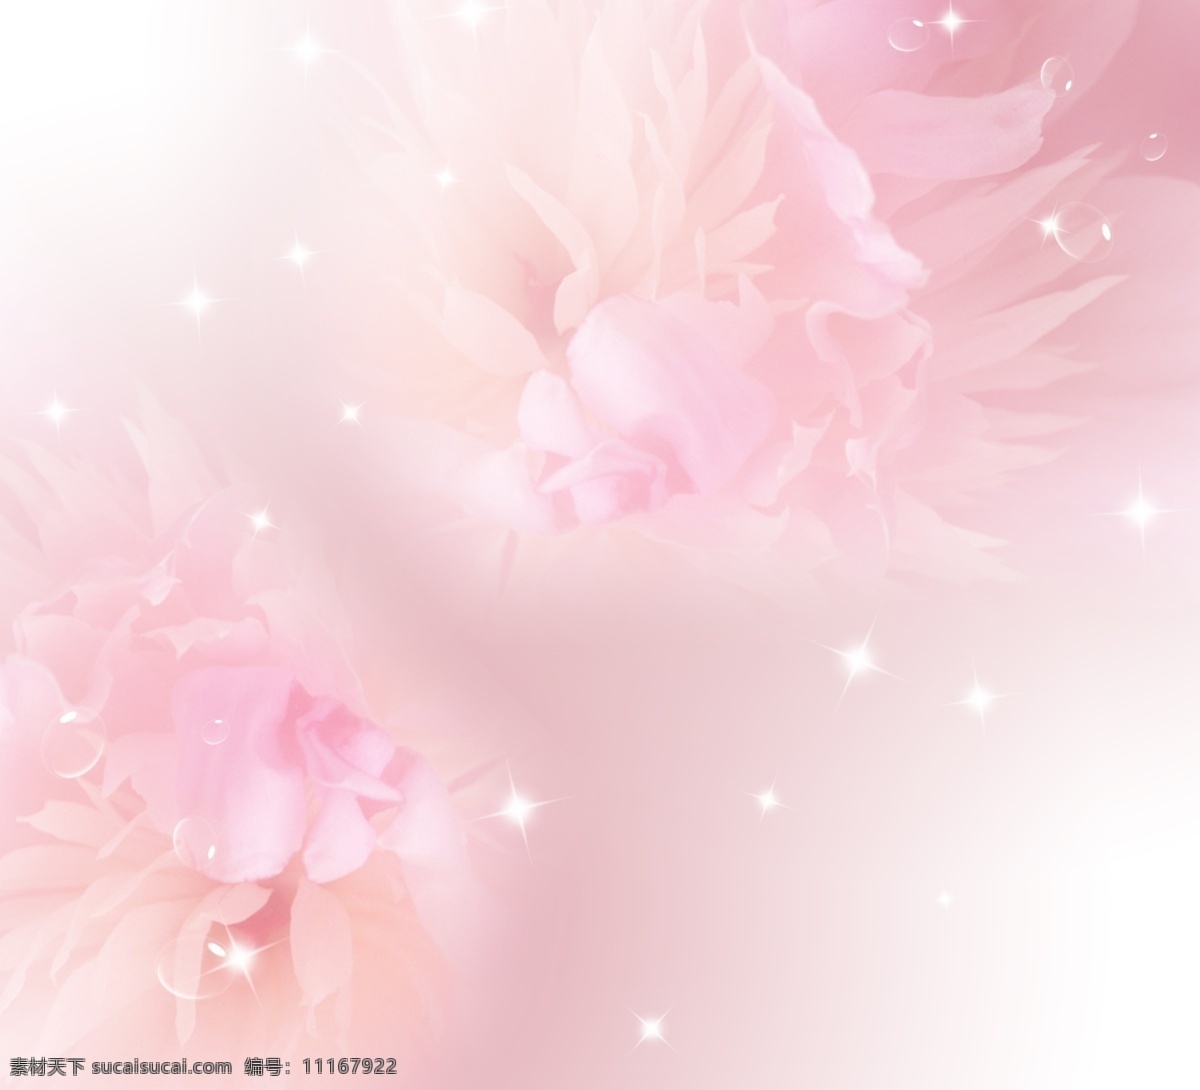 浪漫 典雅 婚纱 背景 模板 粉色背景 花朵儿 光晕 星光 透明泡泡 元素组合 婚纱背景模板 分层 源文件